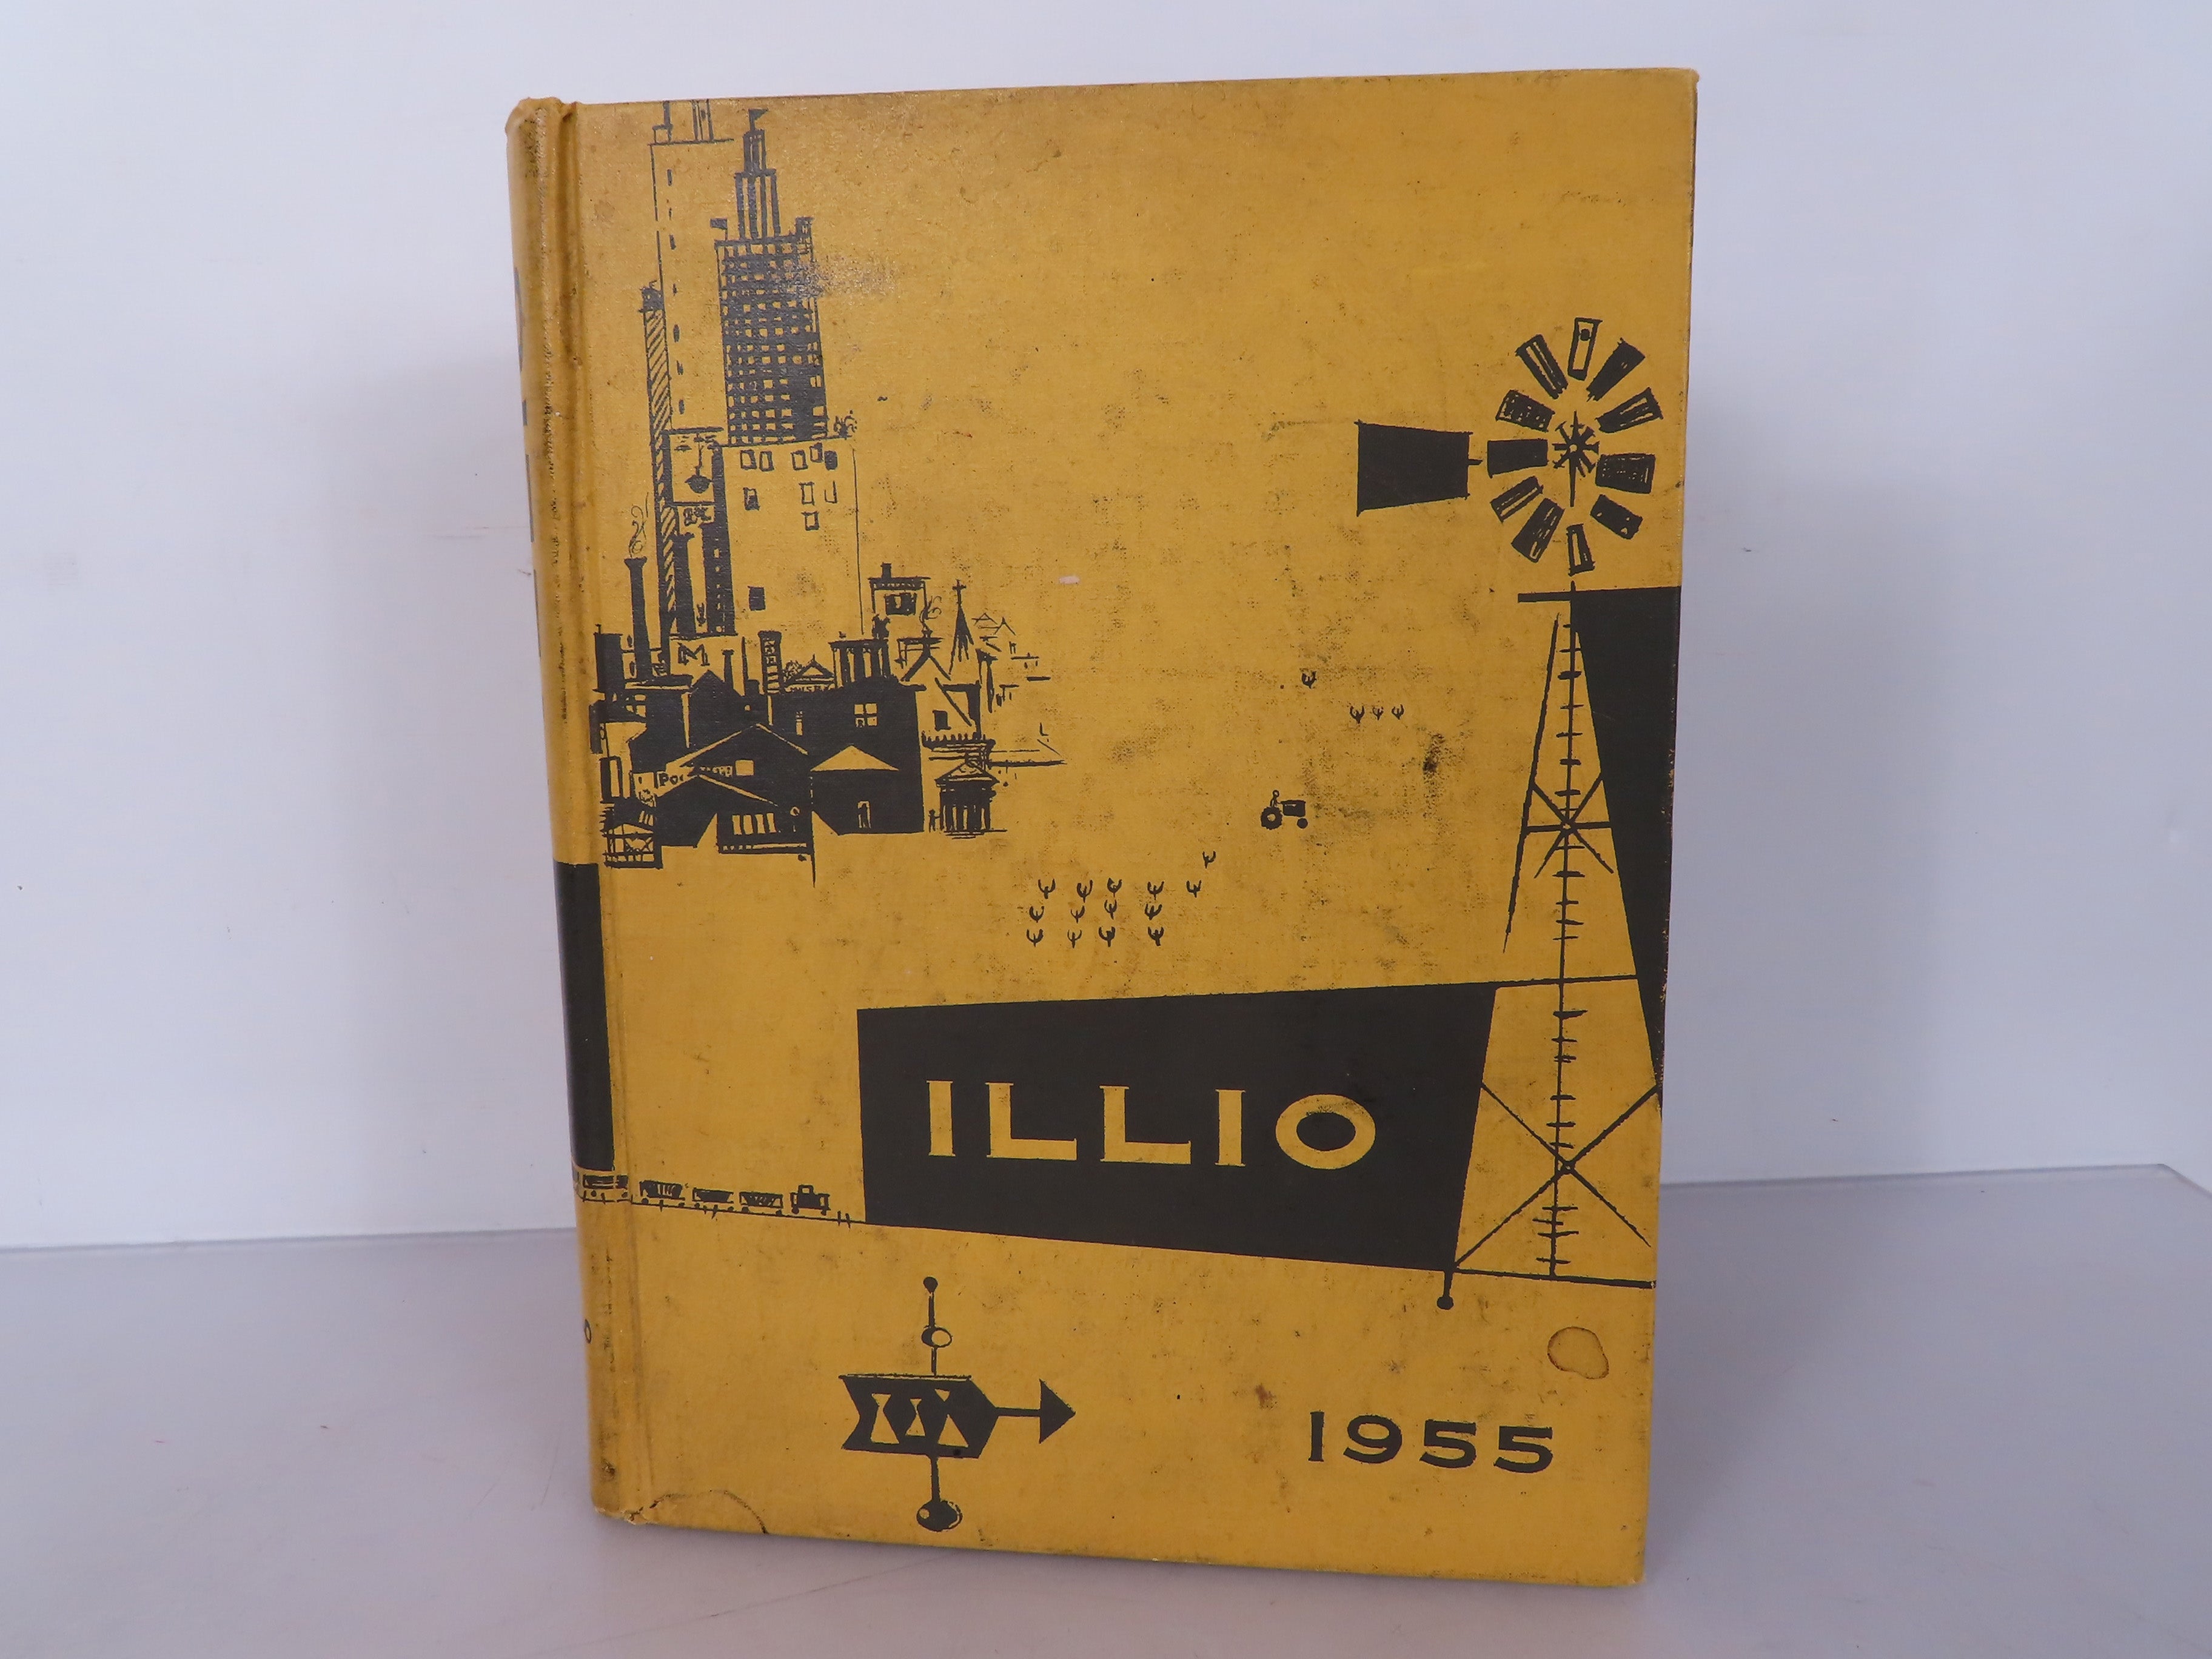 Illio 1955 Yearbook The University of Illinois